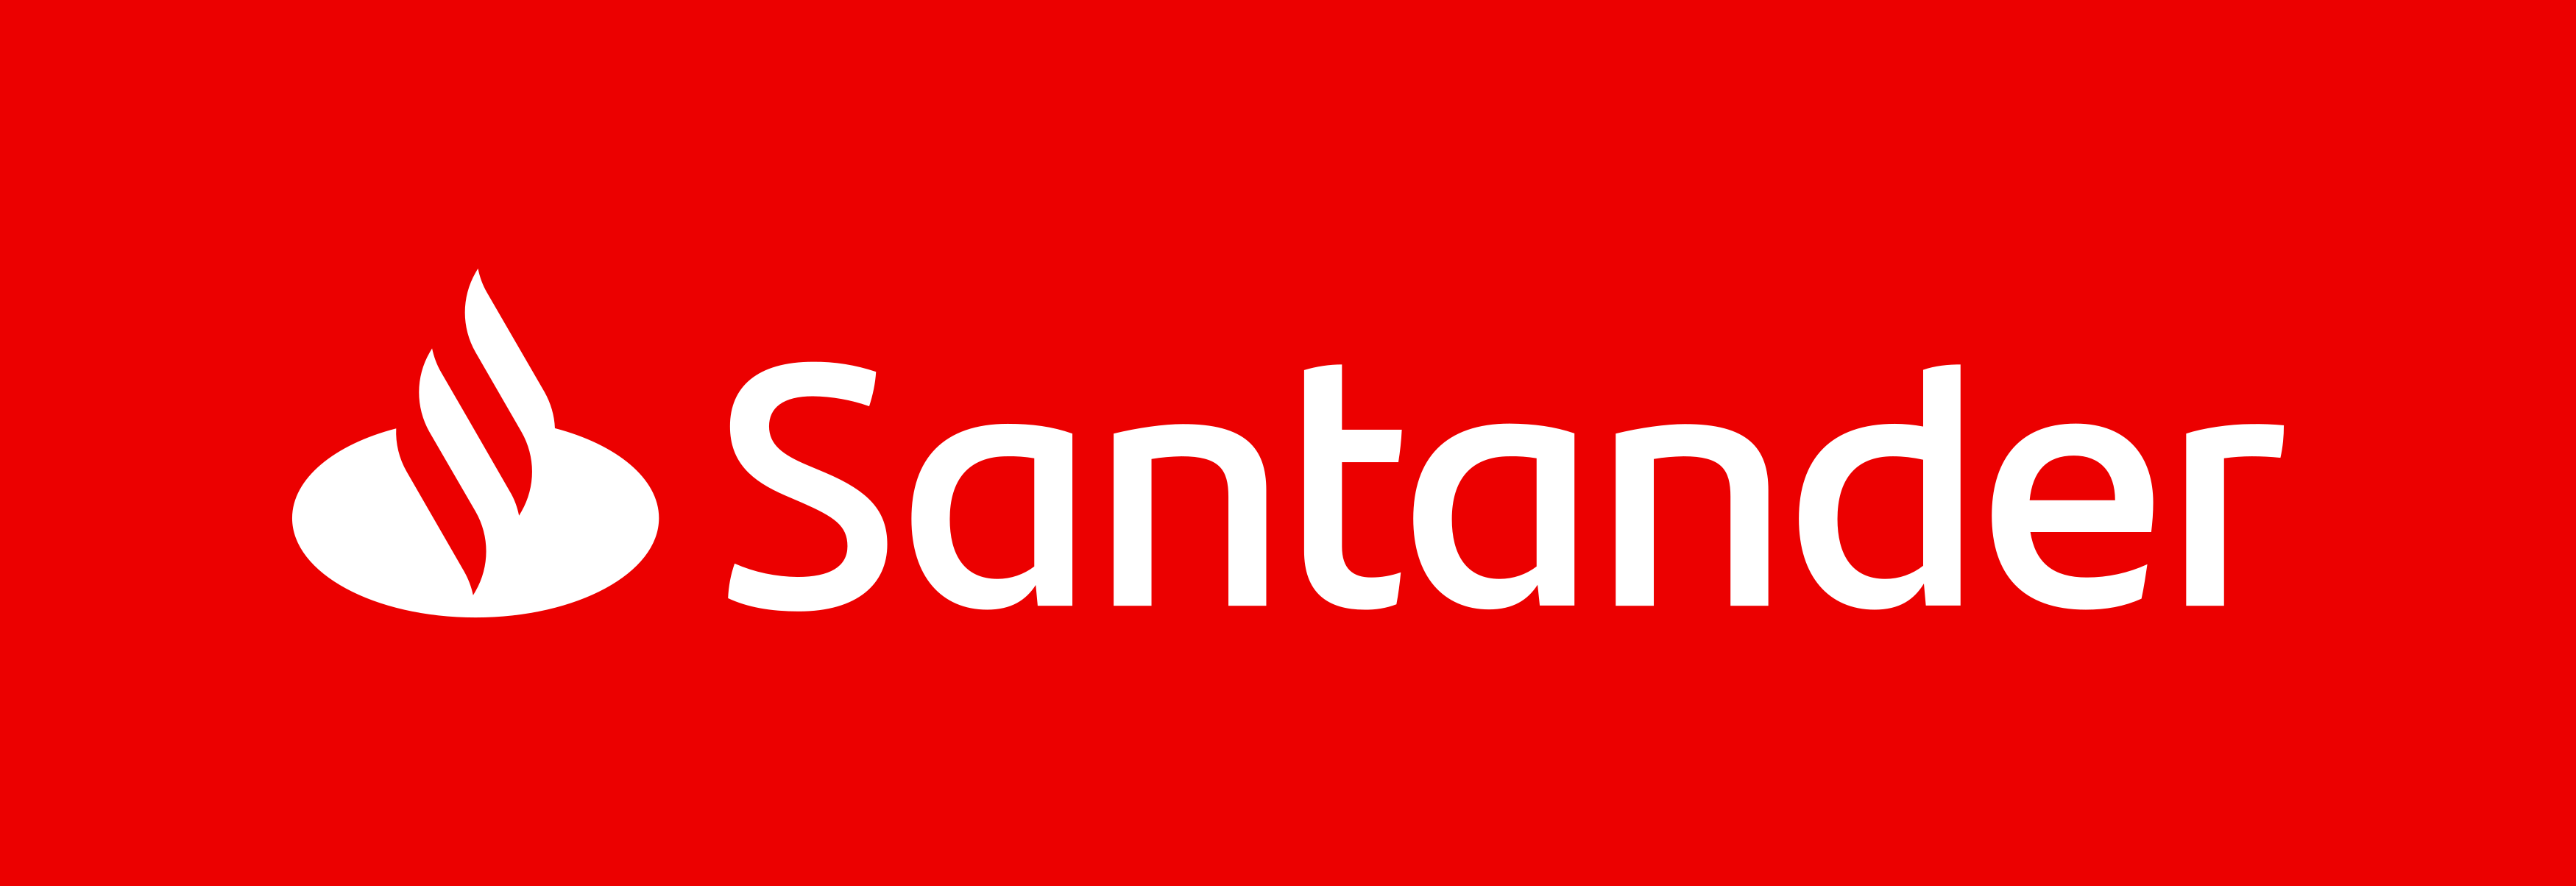 santander logo 1 - Santander Logo